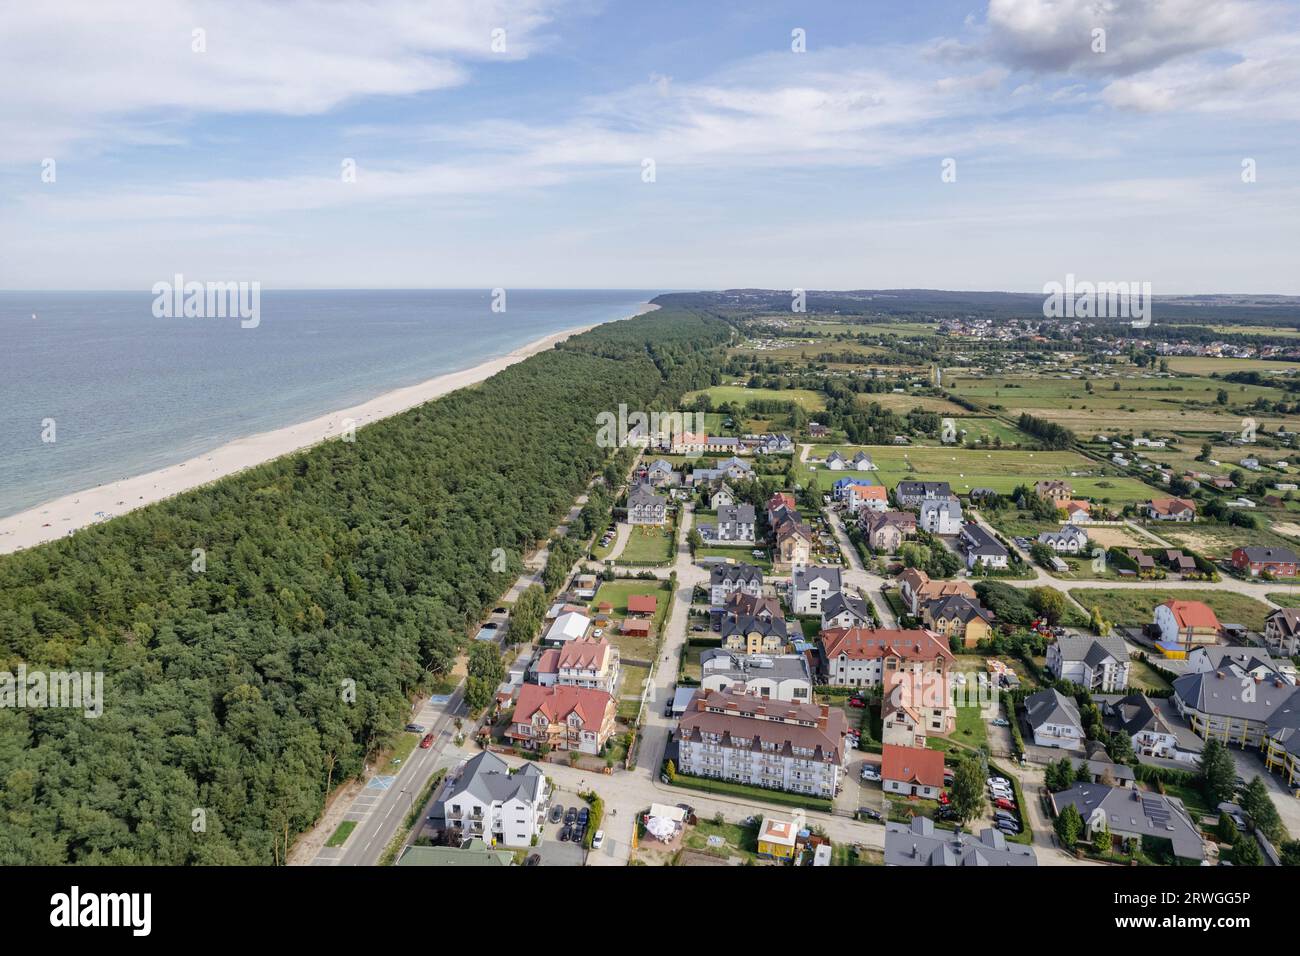 foto del drone del villaggio di pescatori di karwia. A Kaszuby in Polonia. Nel mar baltico. Ostrowo, Baltikum, Polonia, Kaschubien Dorf, Drohnenfoto, bei Danzig Foto Stock